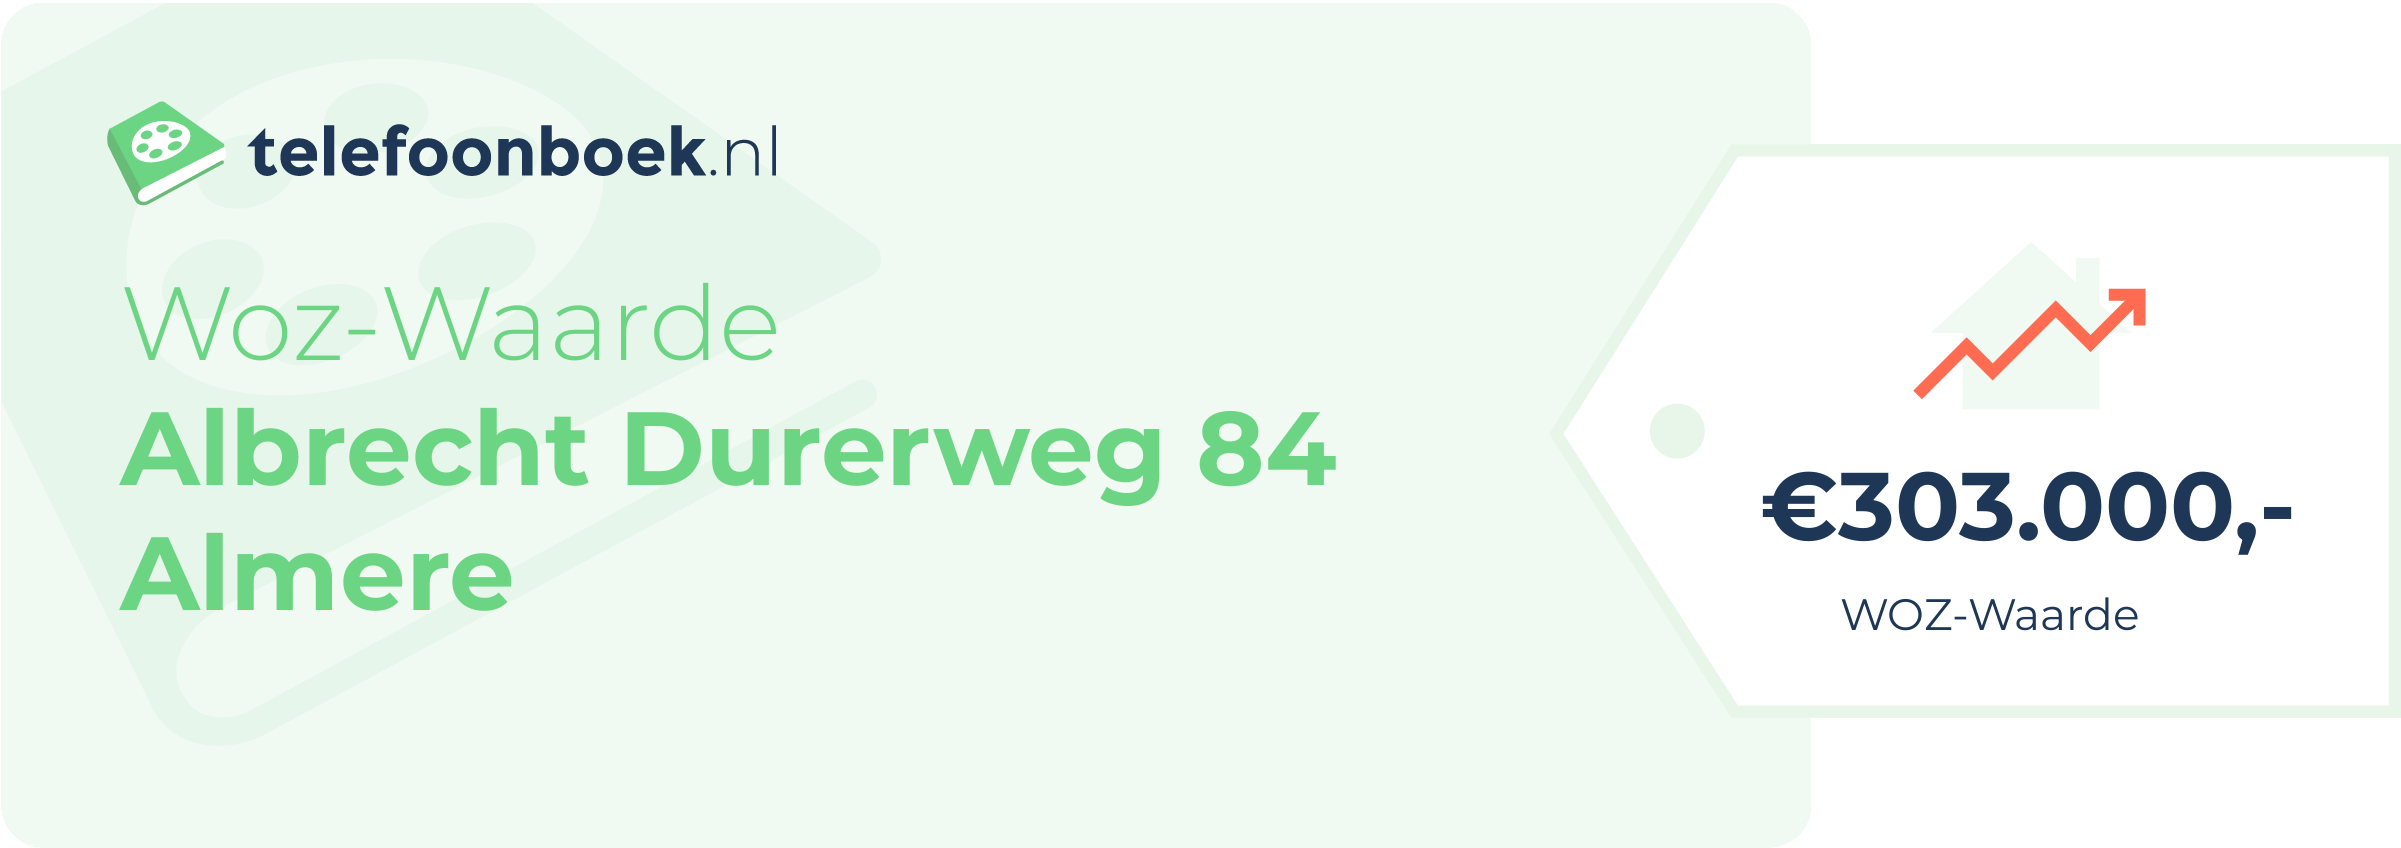 WOZ-waarde Albrecht Durerweg 84 Almere